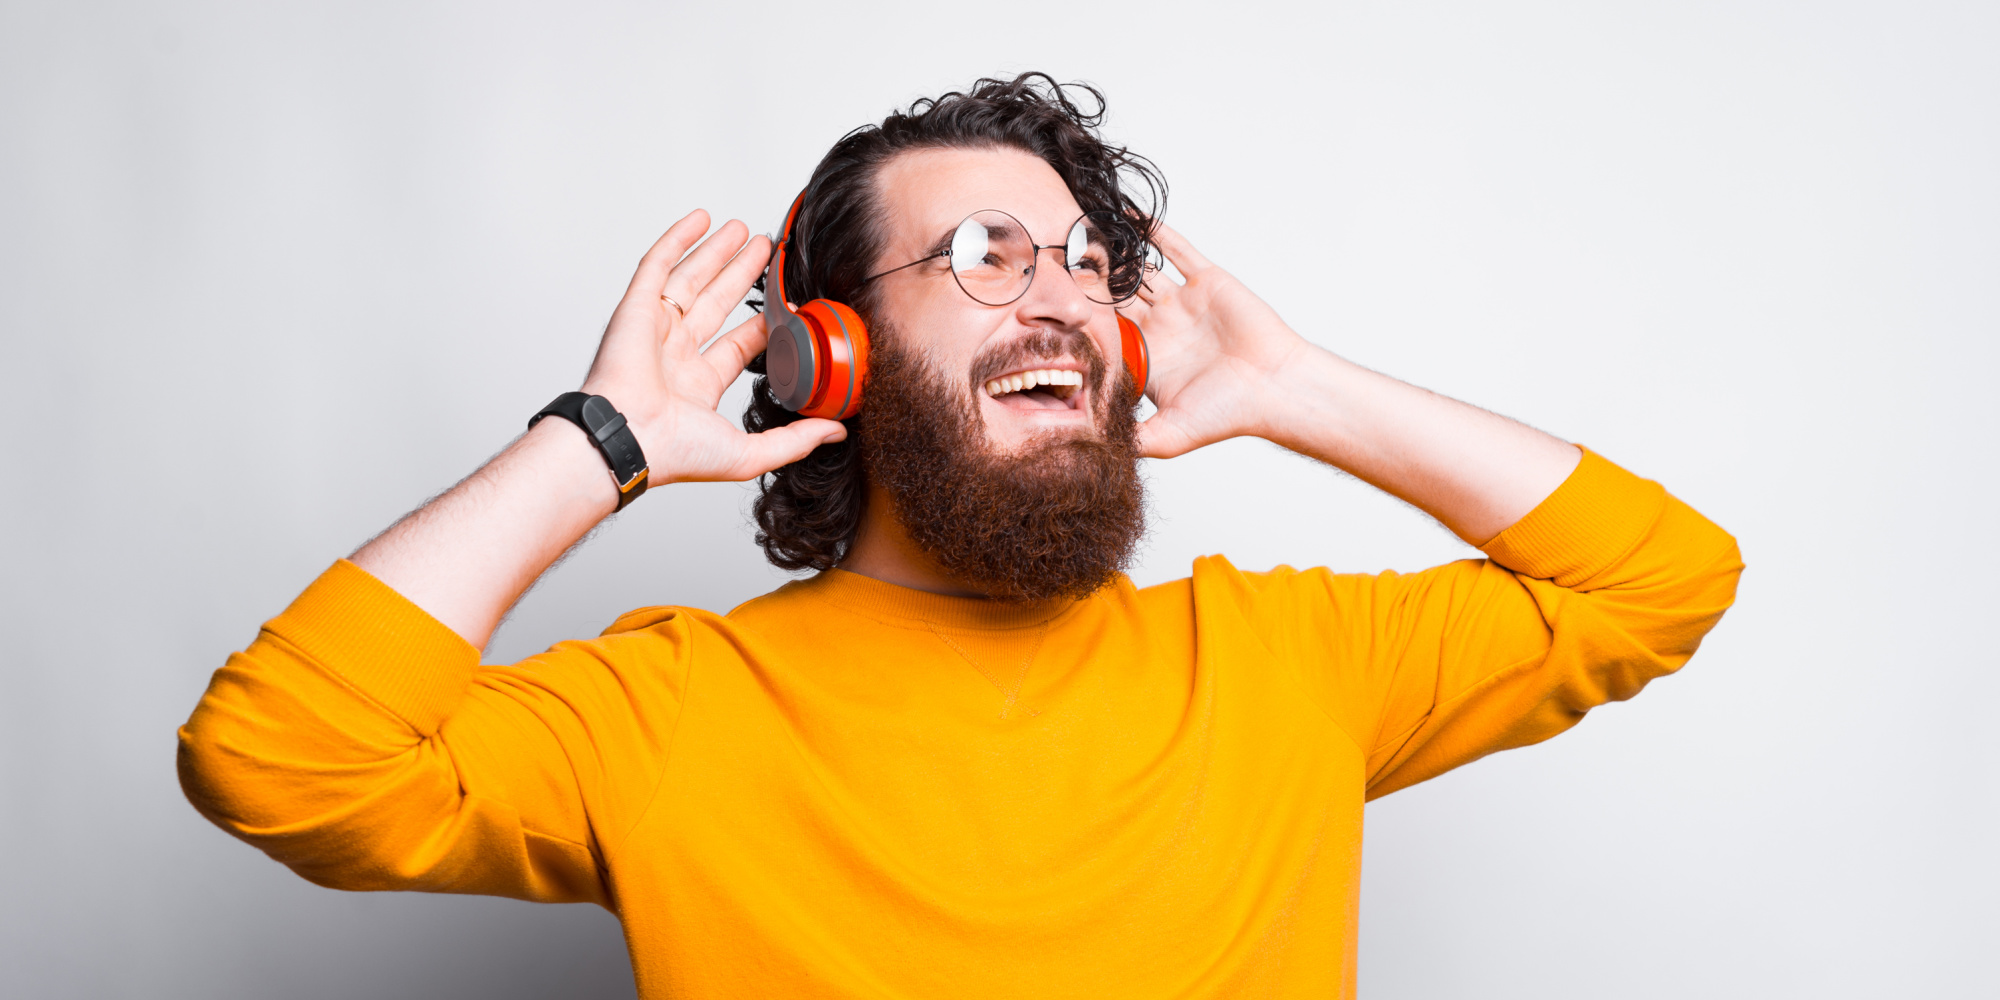 Mand i gul trøje som er glad og lytter til musik